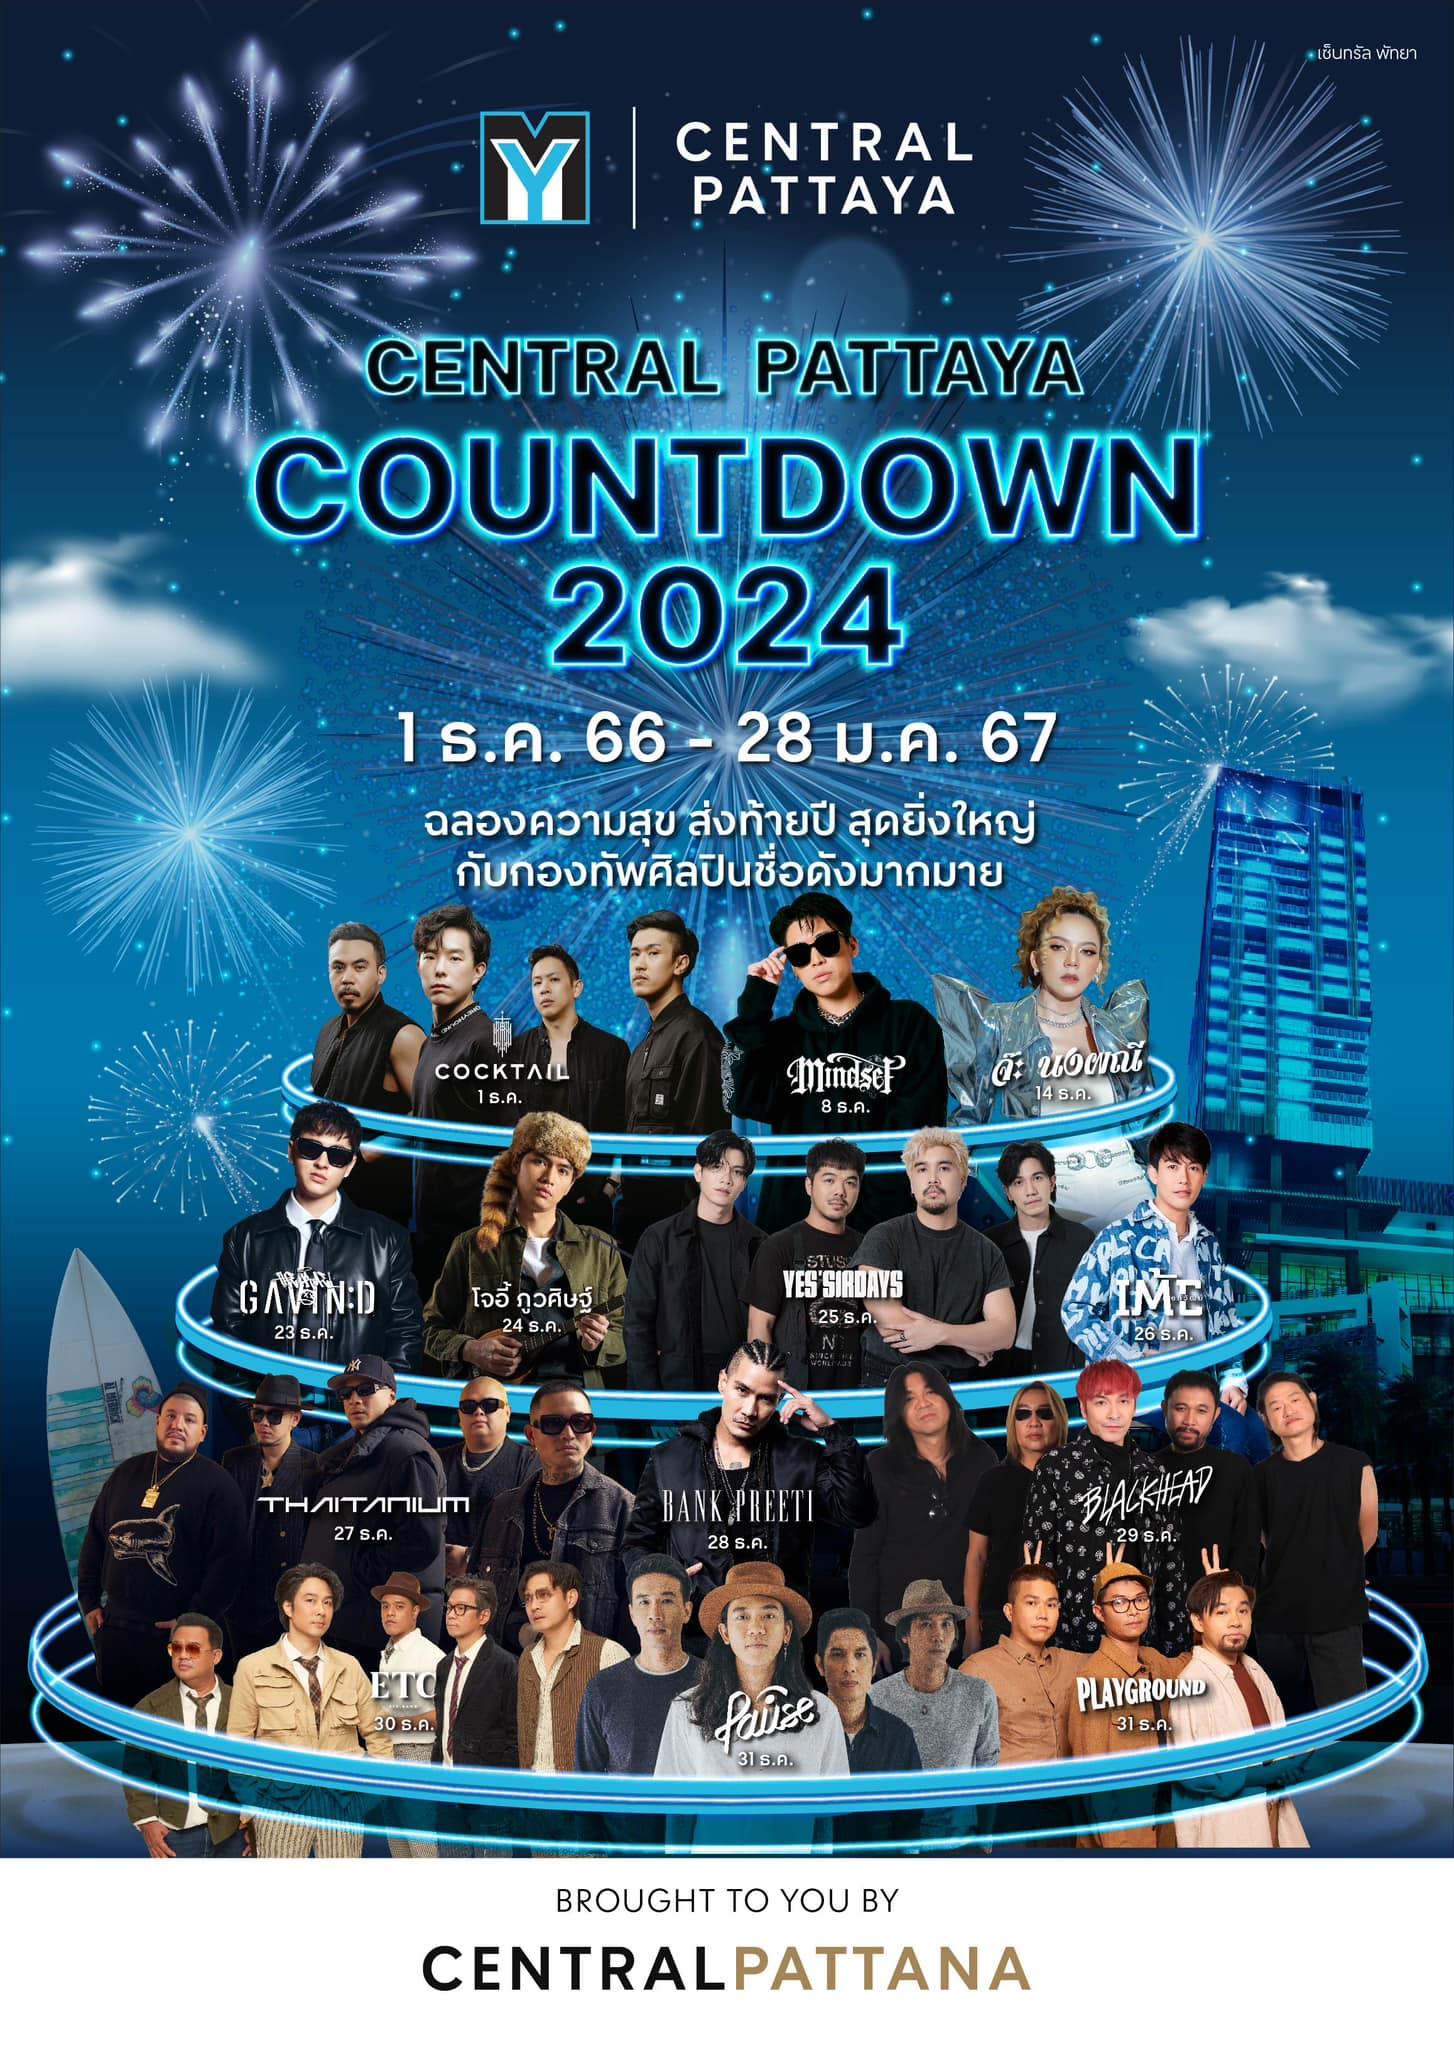 Pattaya Countdown 2024 at Central Pattaya Shopping Mall